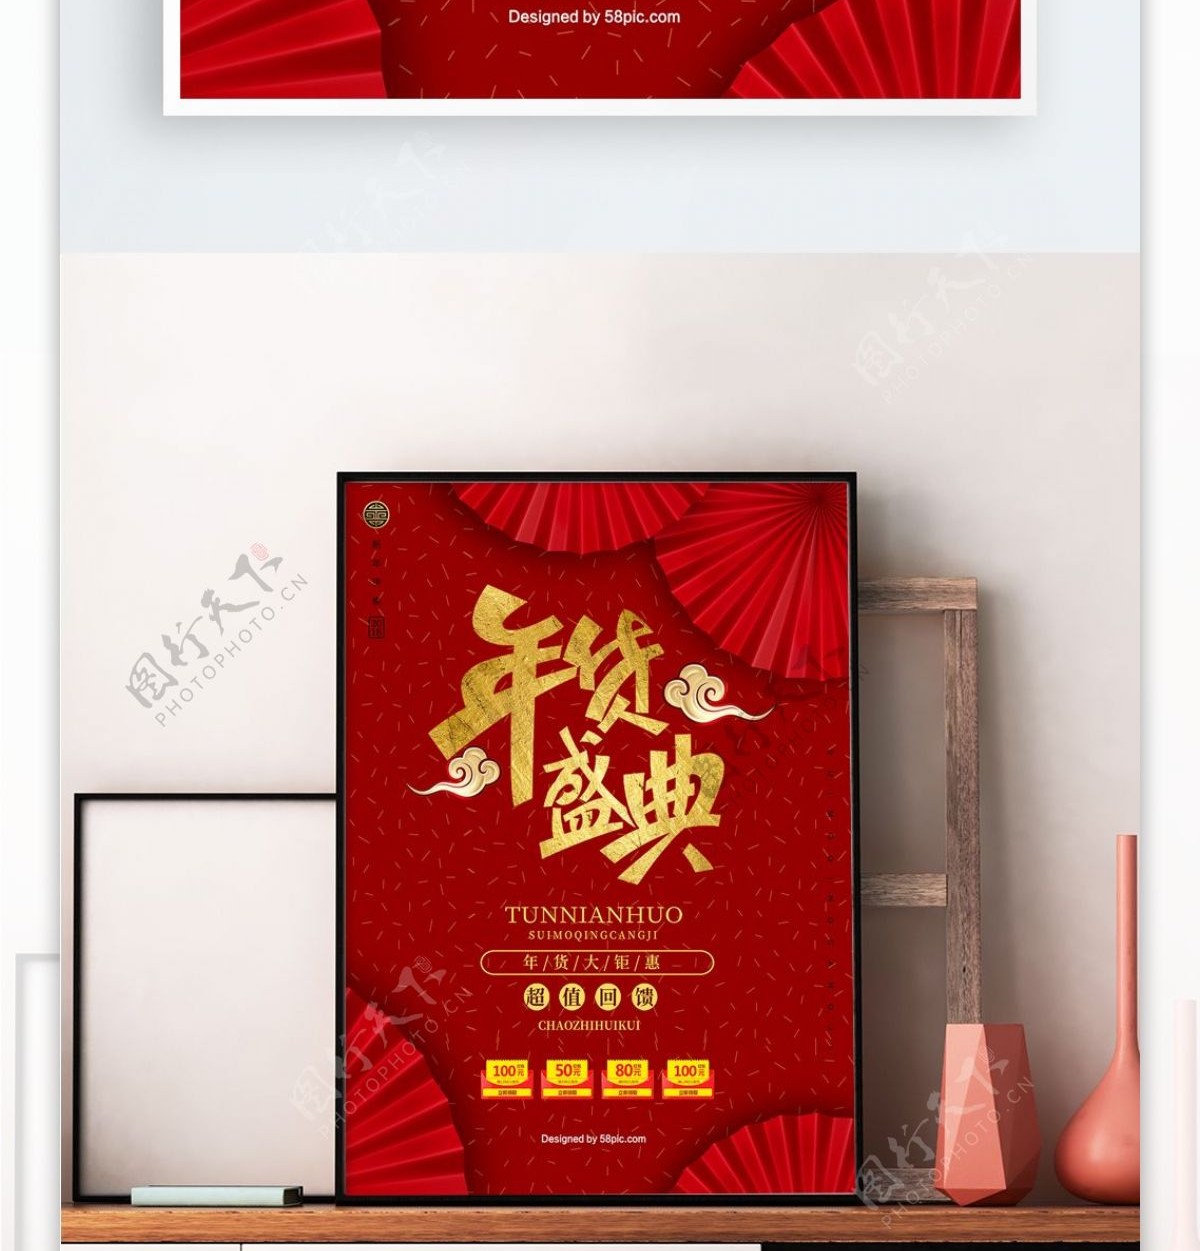 中式折扇年货盛典海报